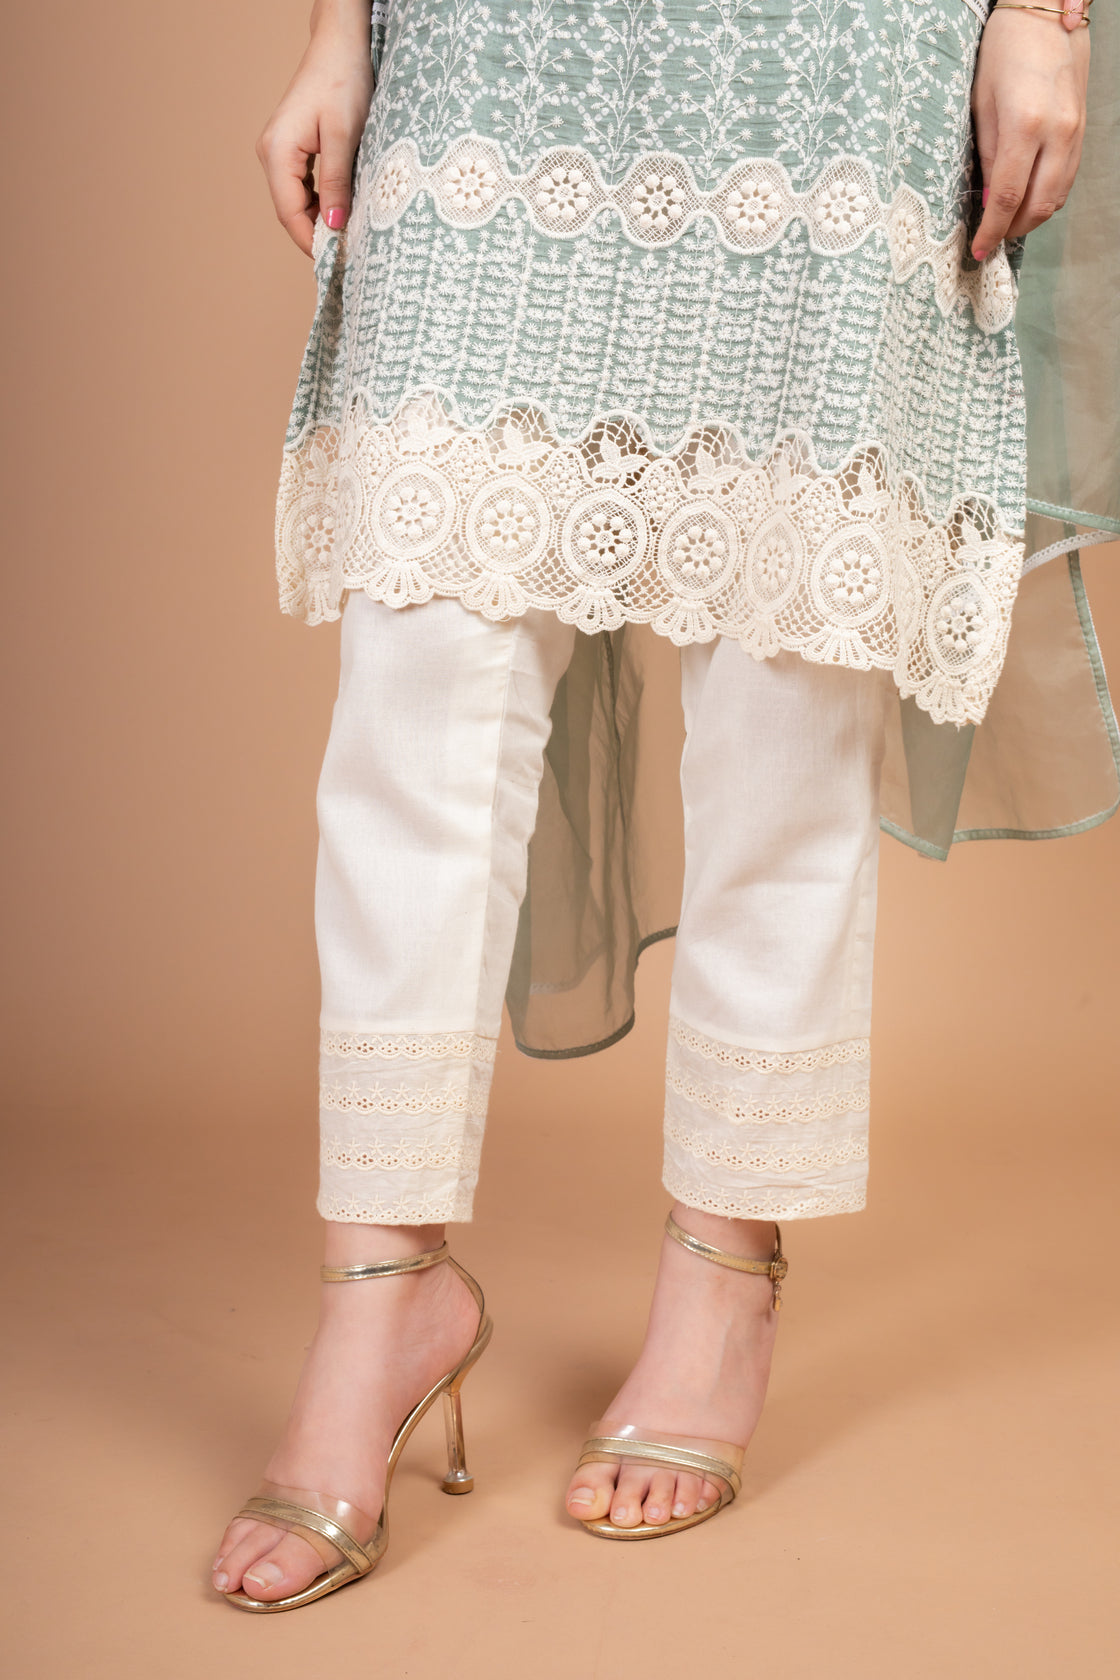 Jividha - Adaara Pastel greeen Suit Set with crochet detailing - Adaara